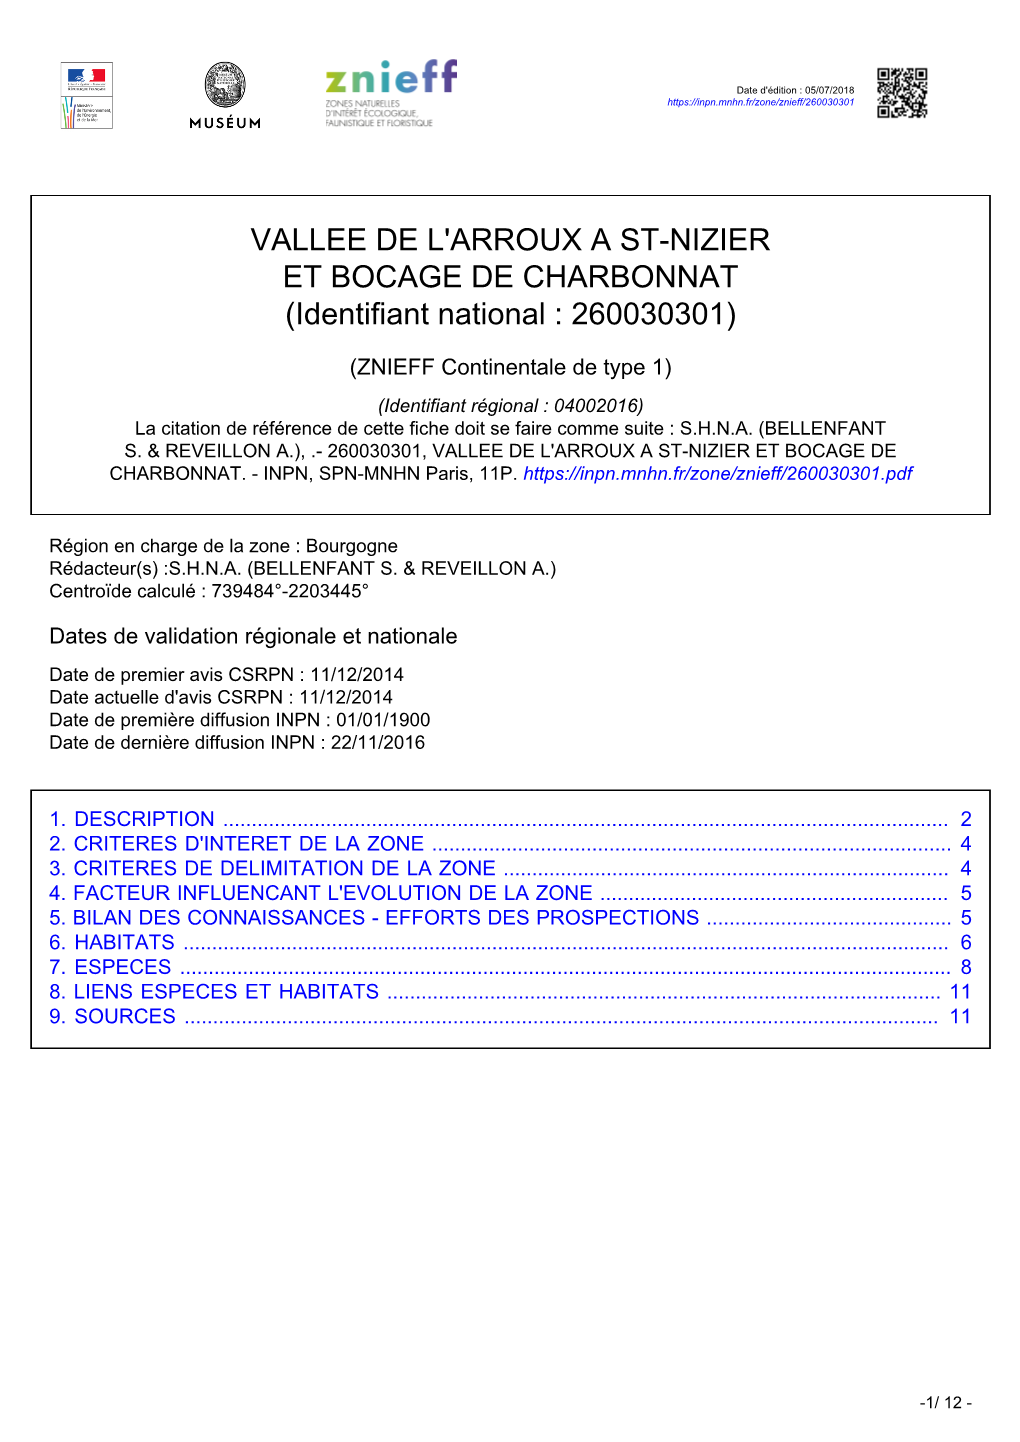 VALLEE DE L'arroux a ST-NIZIER ET BOCAGE DE CHARBONNAT (Identifiant National : 260030301)